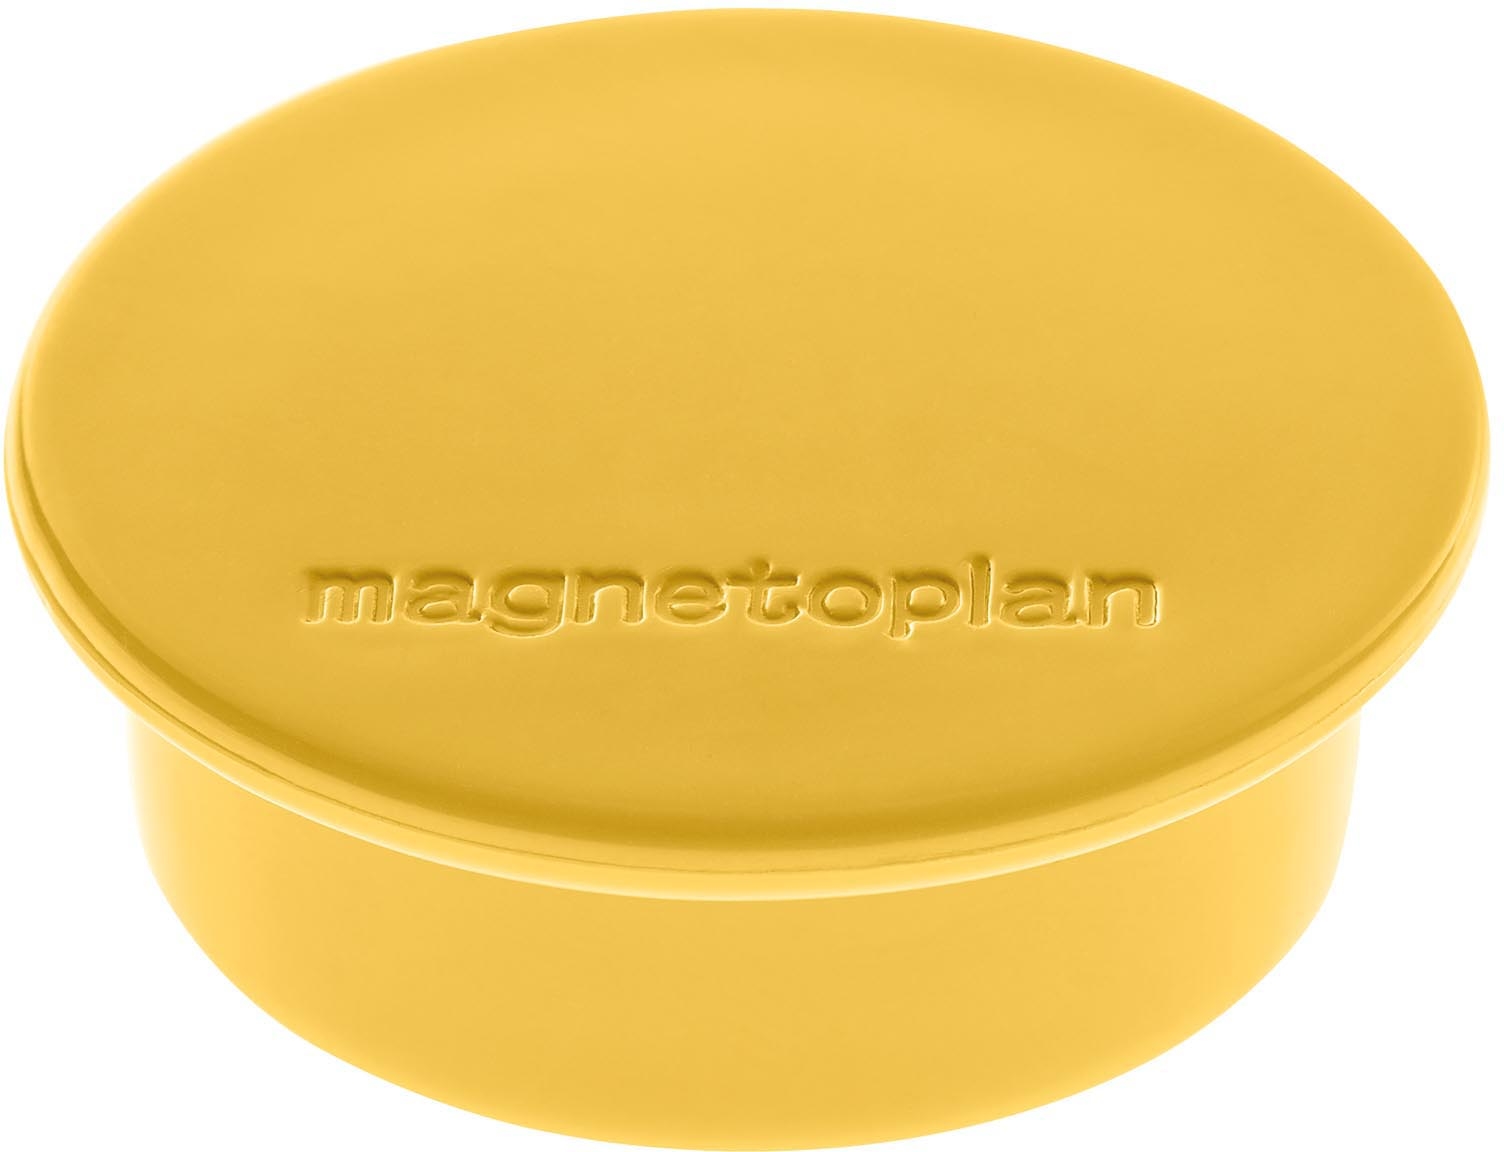 MAGNETOPLAN Aimant Discofix Color 40mm 1662002 jaune 10 pcs.